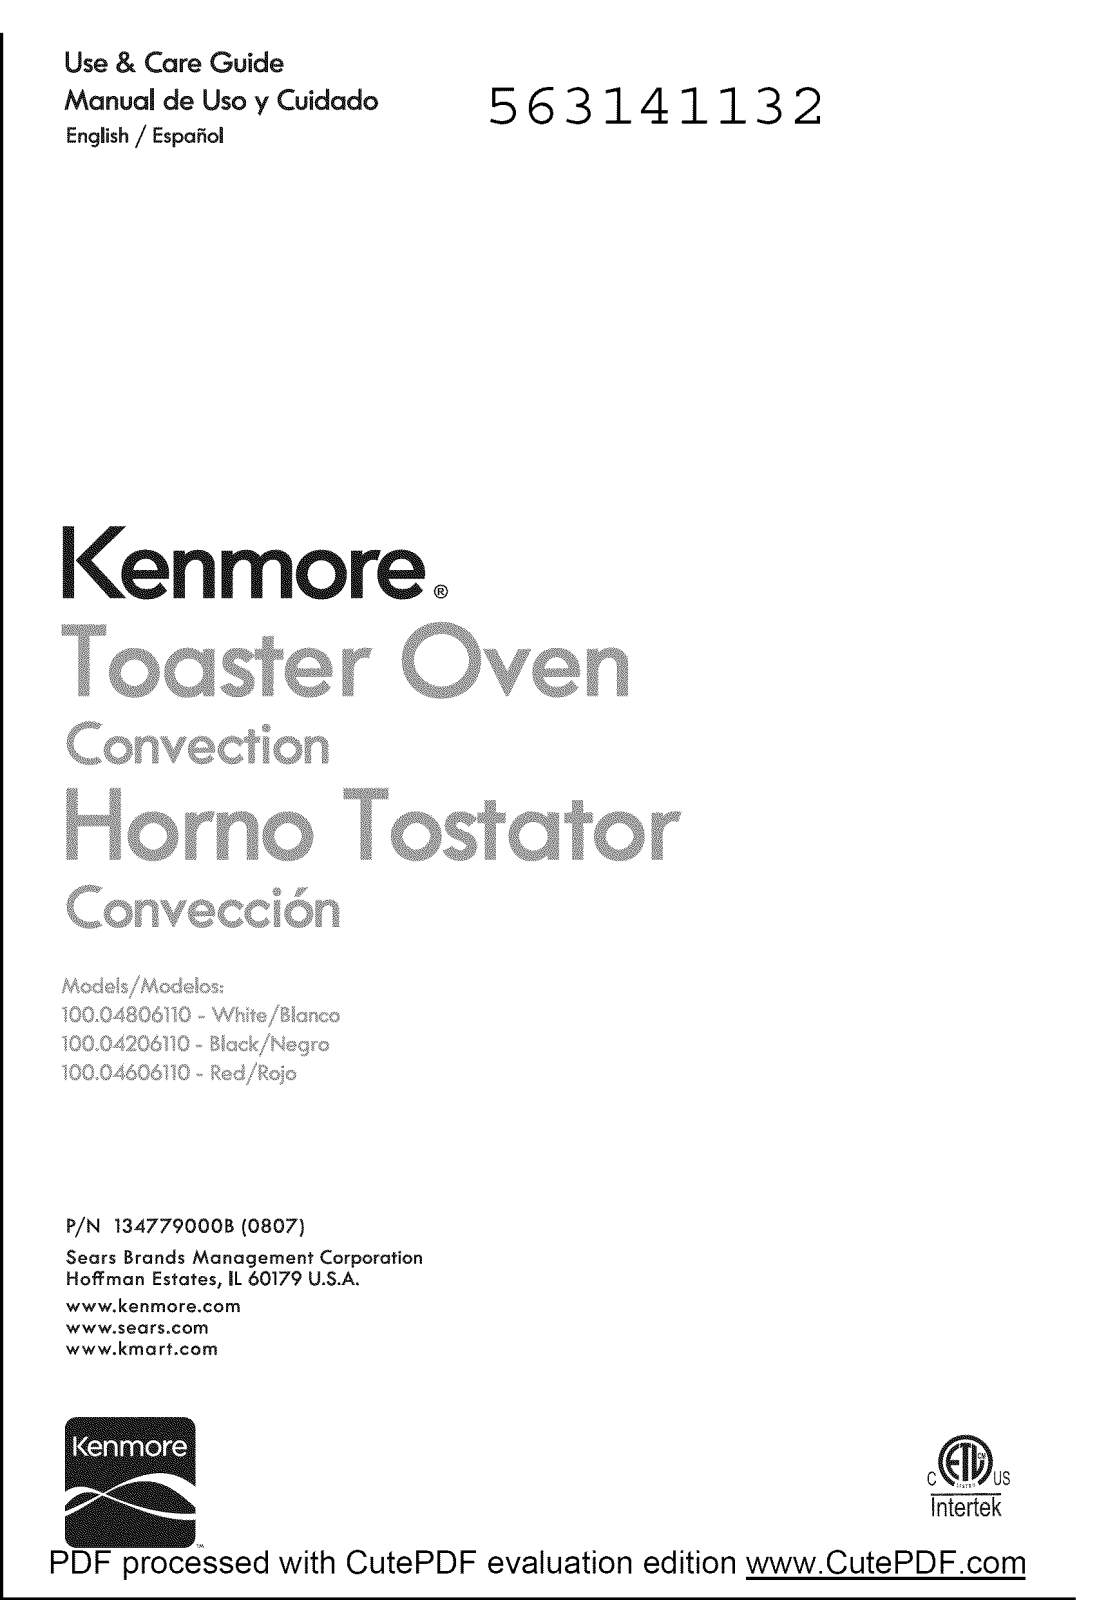 Kenmore 10004806110, 10004606110, 10004206110 Owner’s Manual